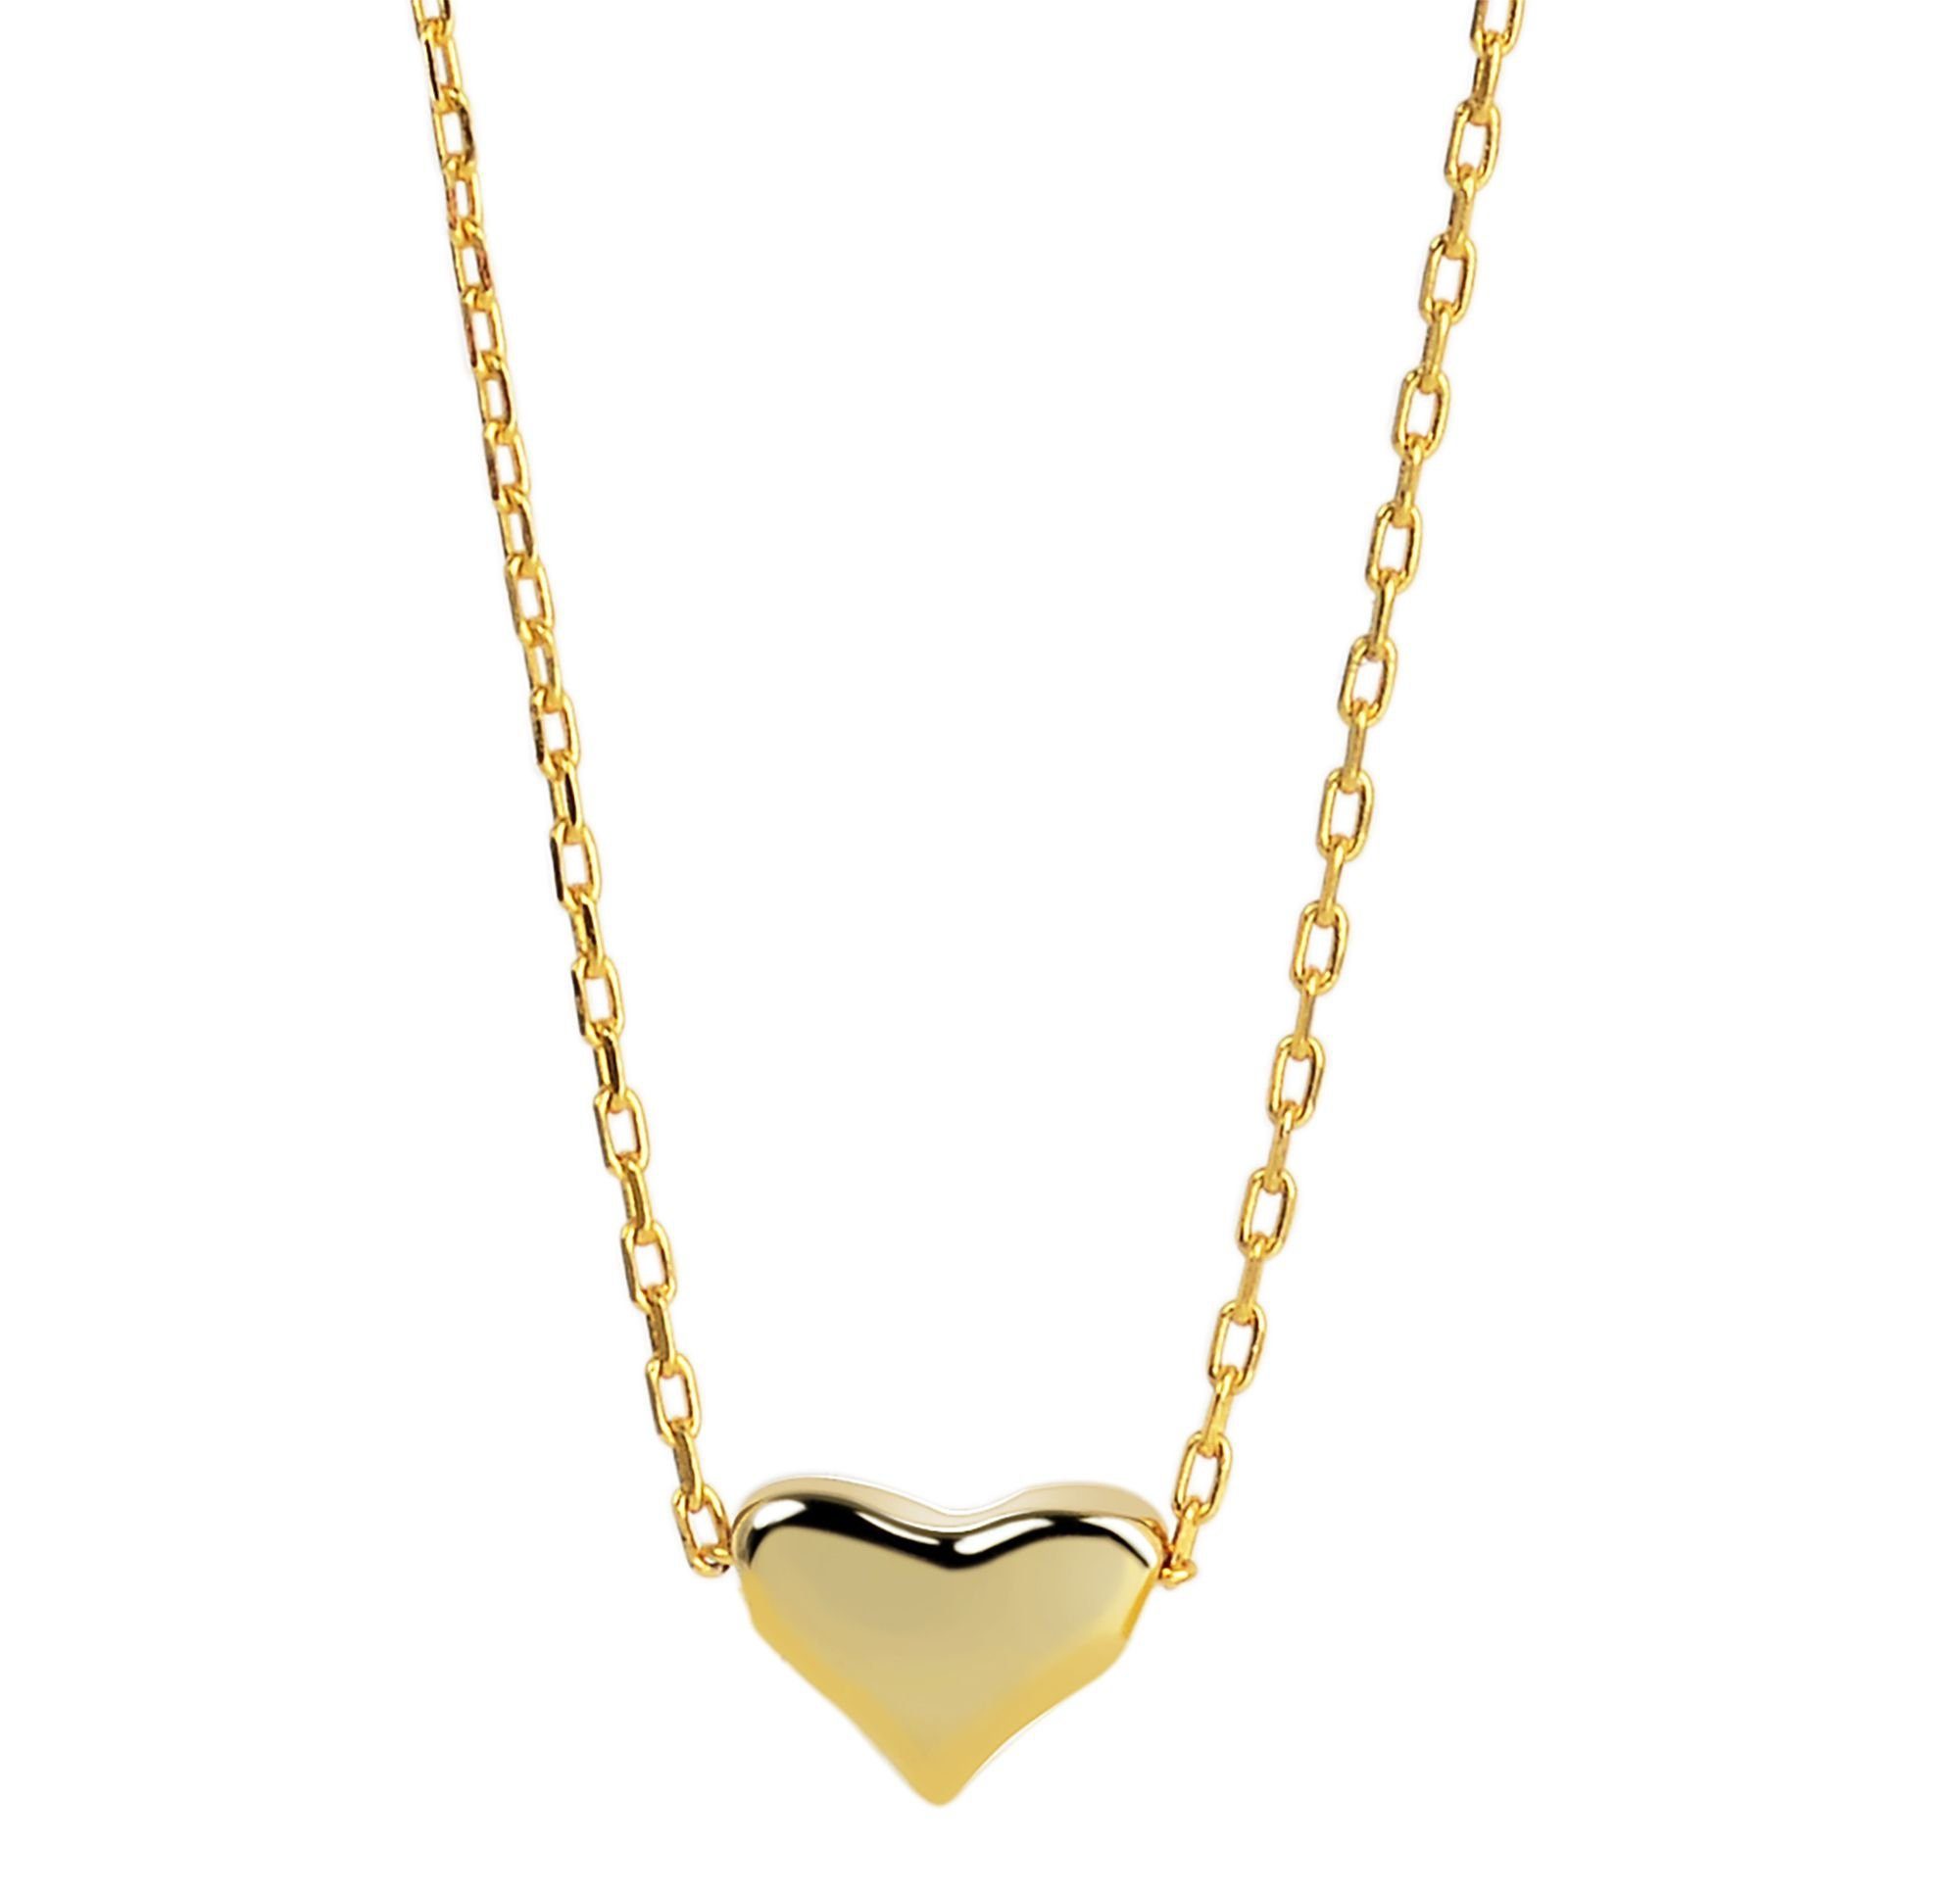 Herz Echt Anhänger Halskette Silber Kanani Kette 925/- aus AKZENT mit Anhänger vergoldet mit